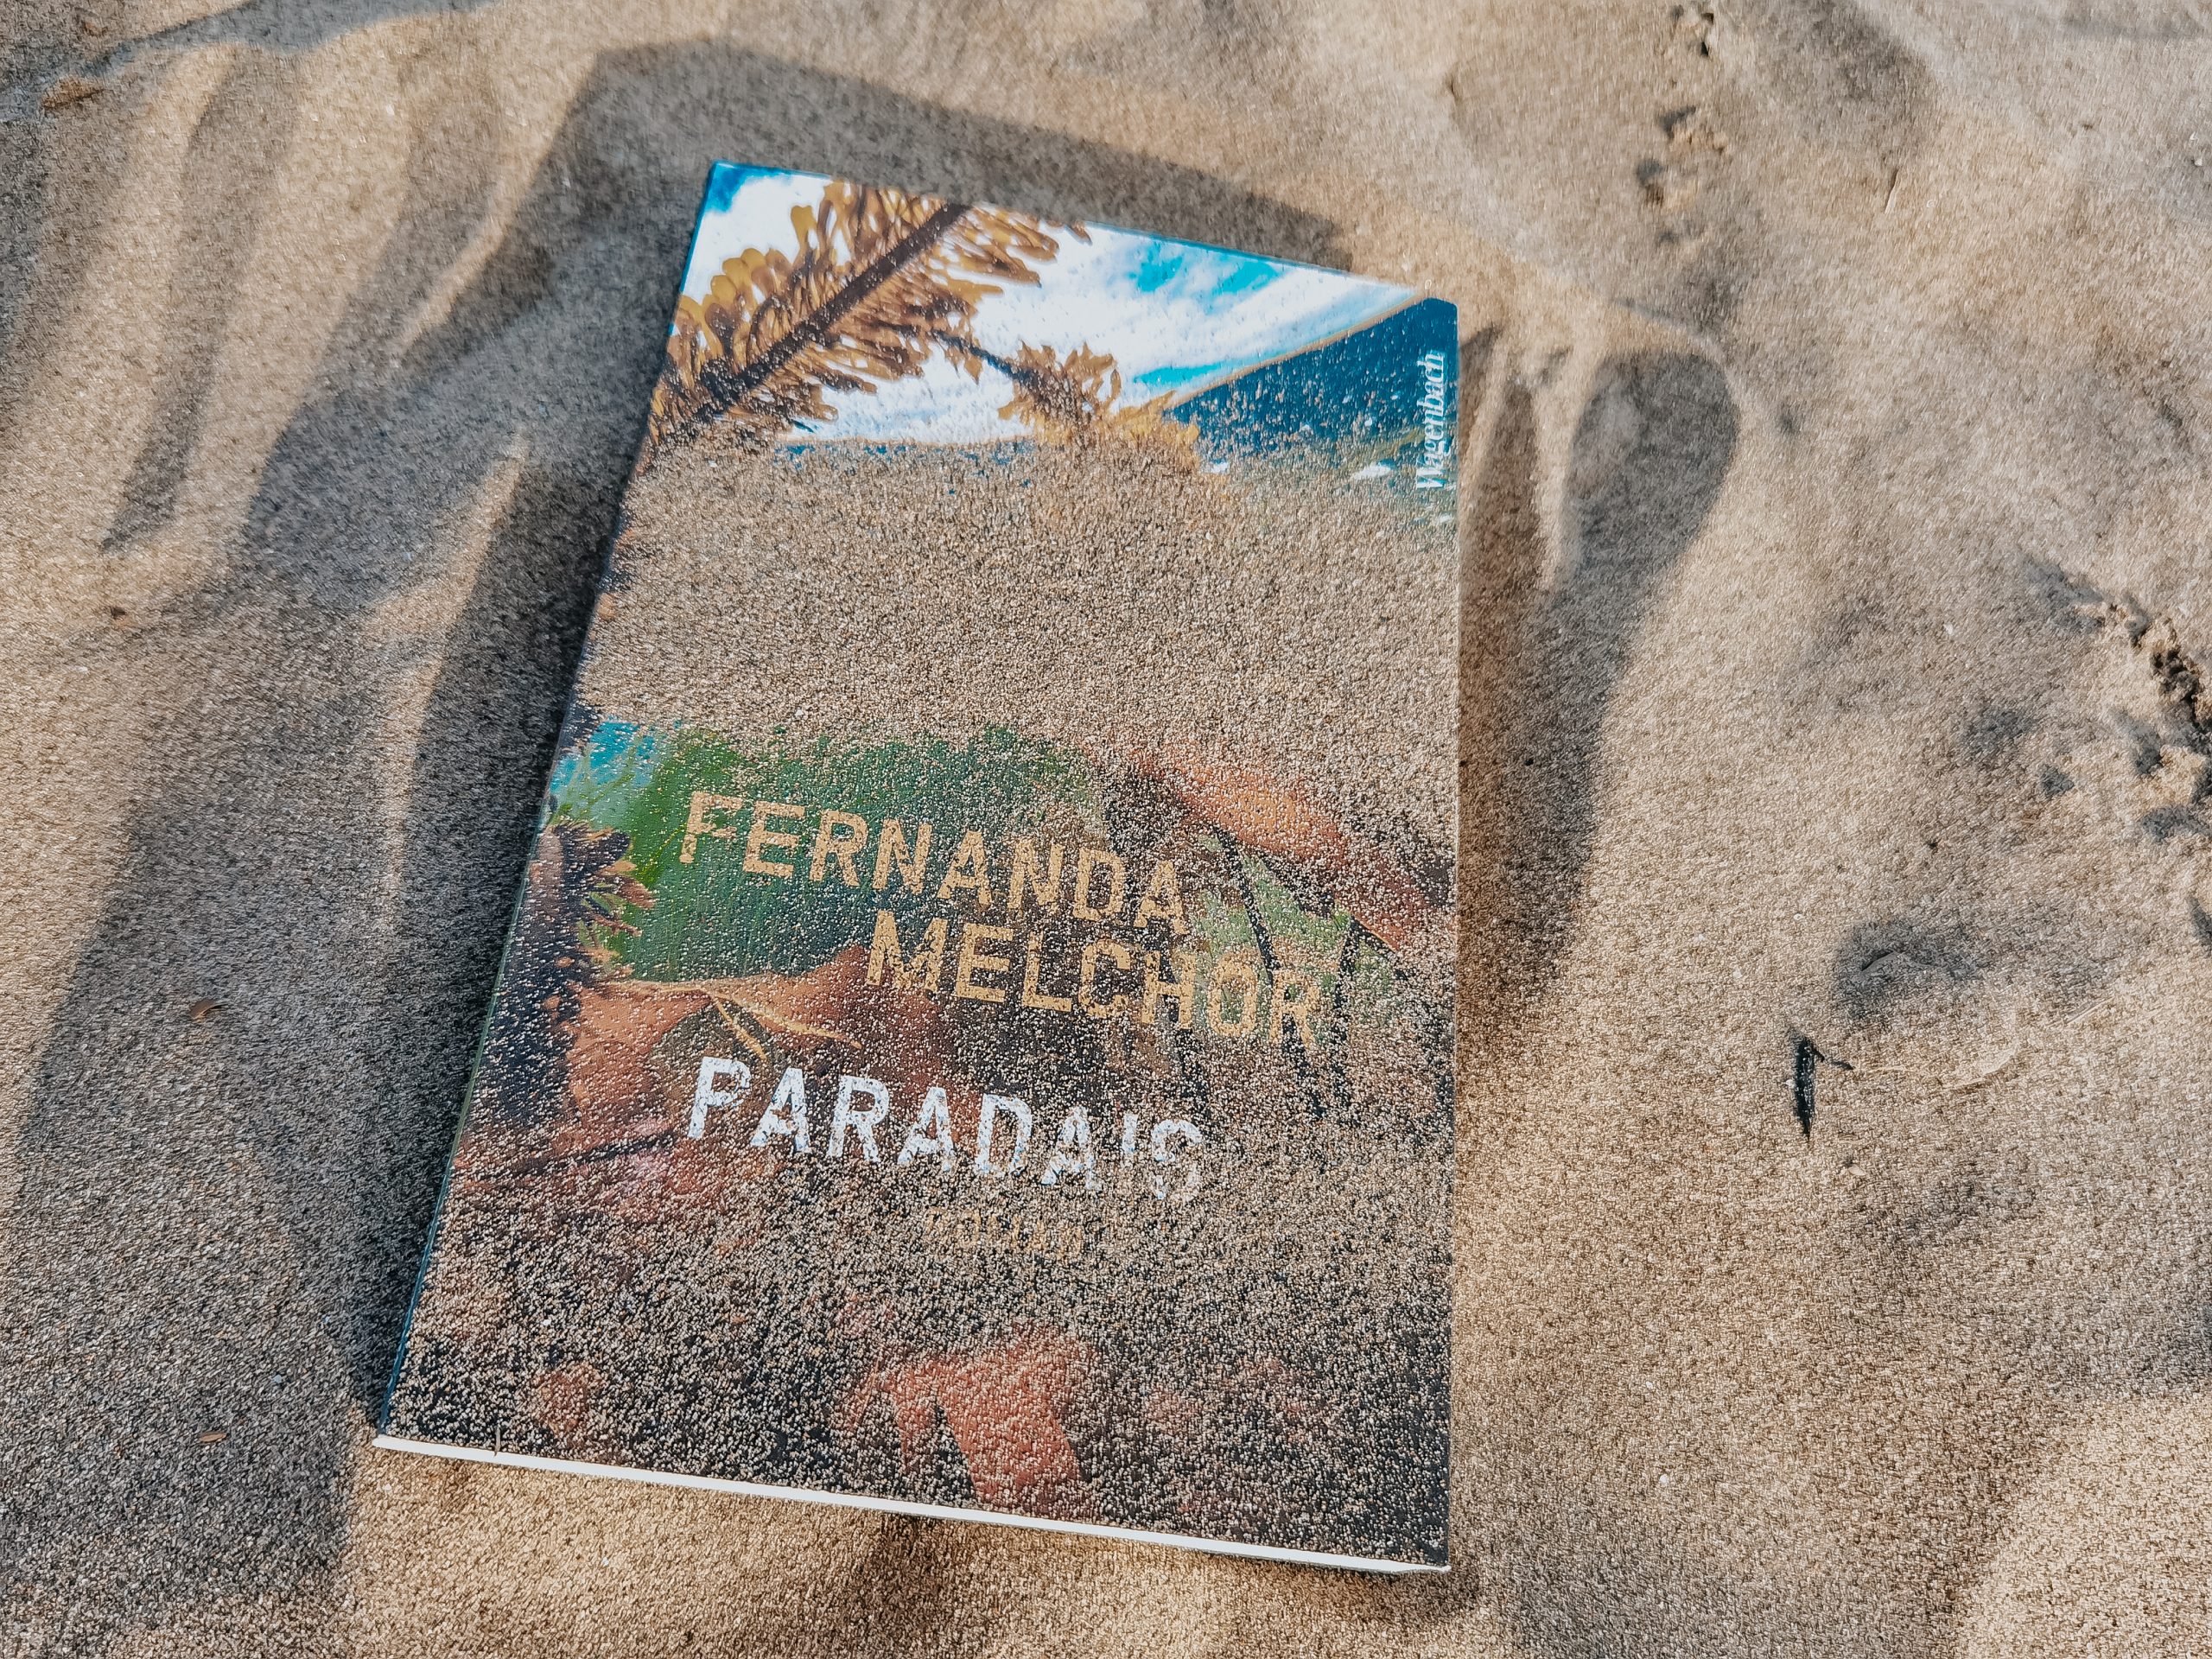 Paradais - Fernanda Melchor 